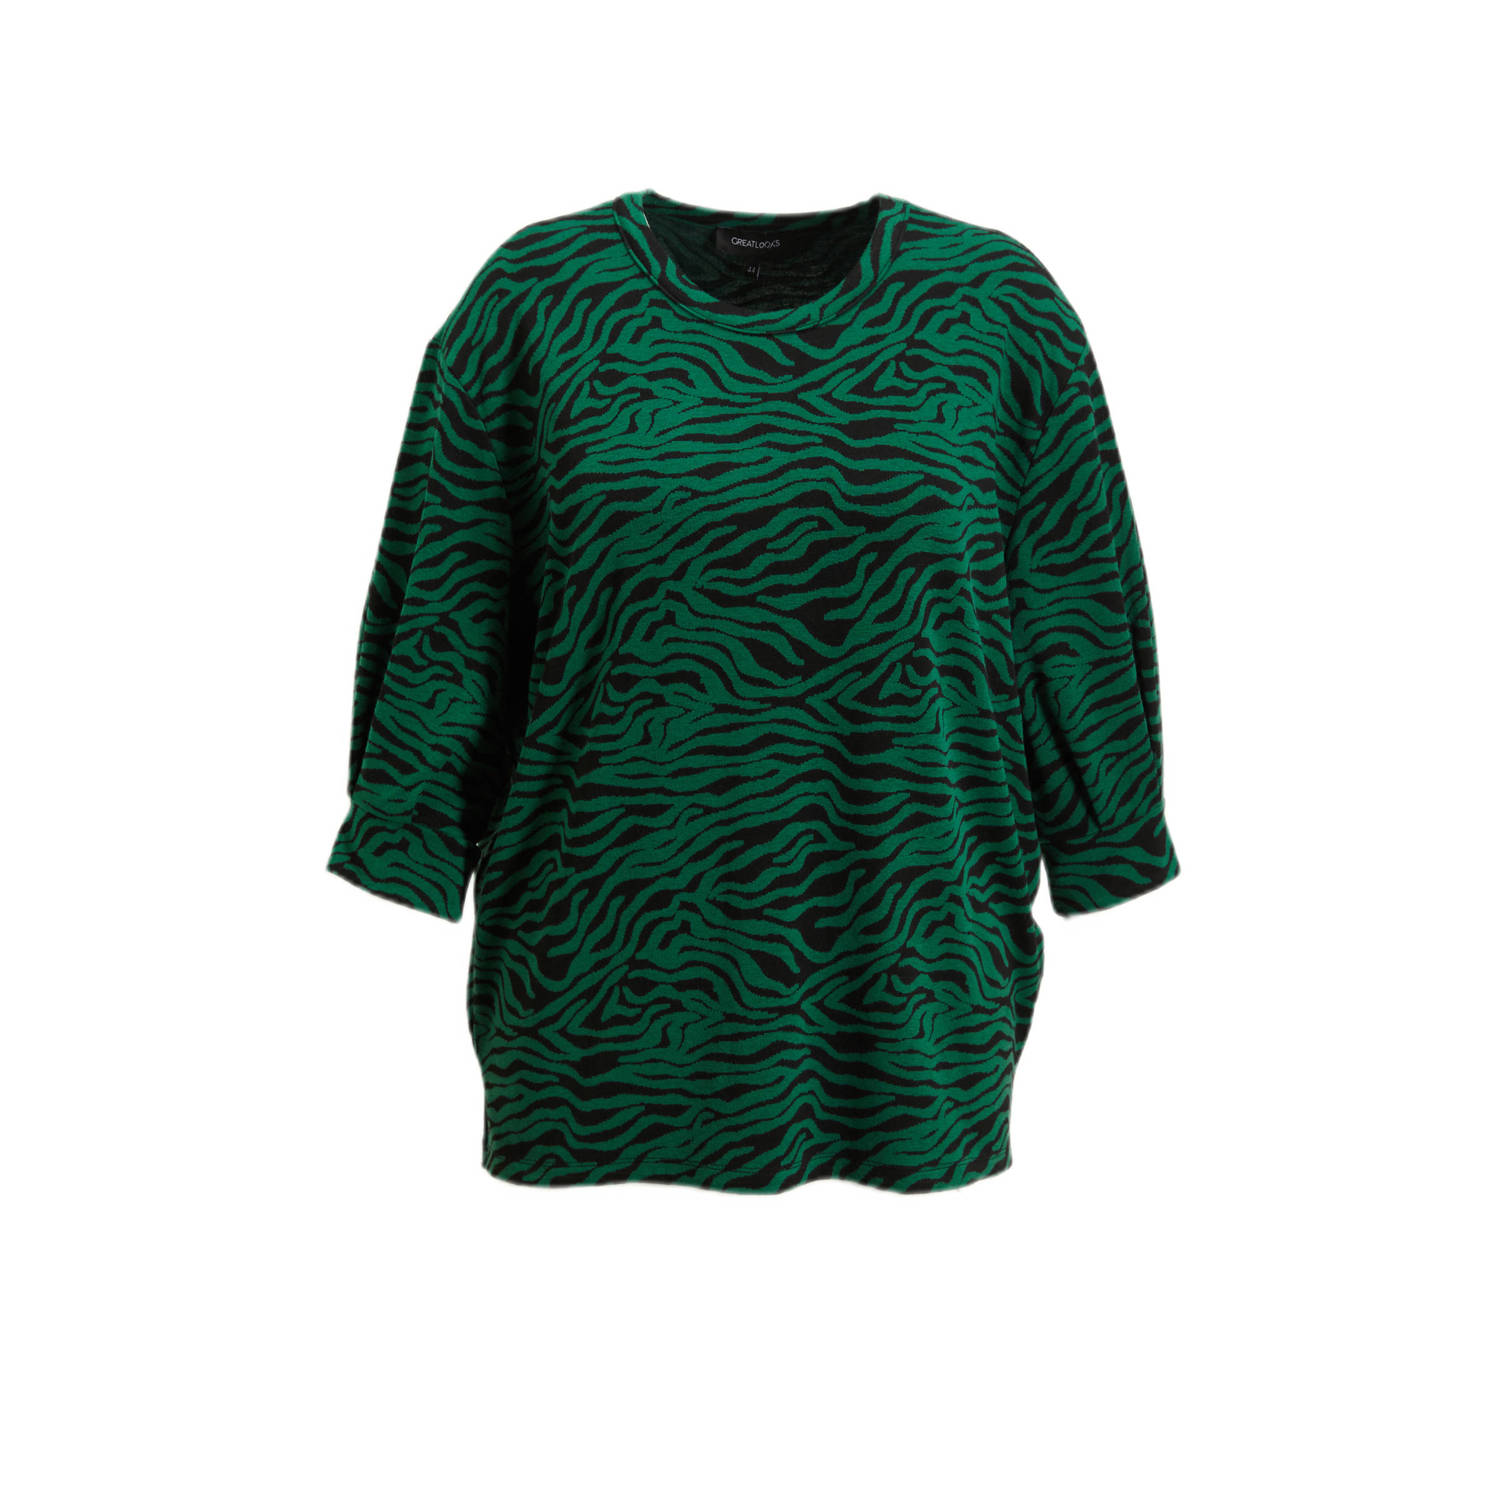 GREAT LOOKS tuniek met zebraprint groen zwart